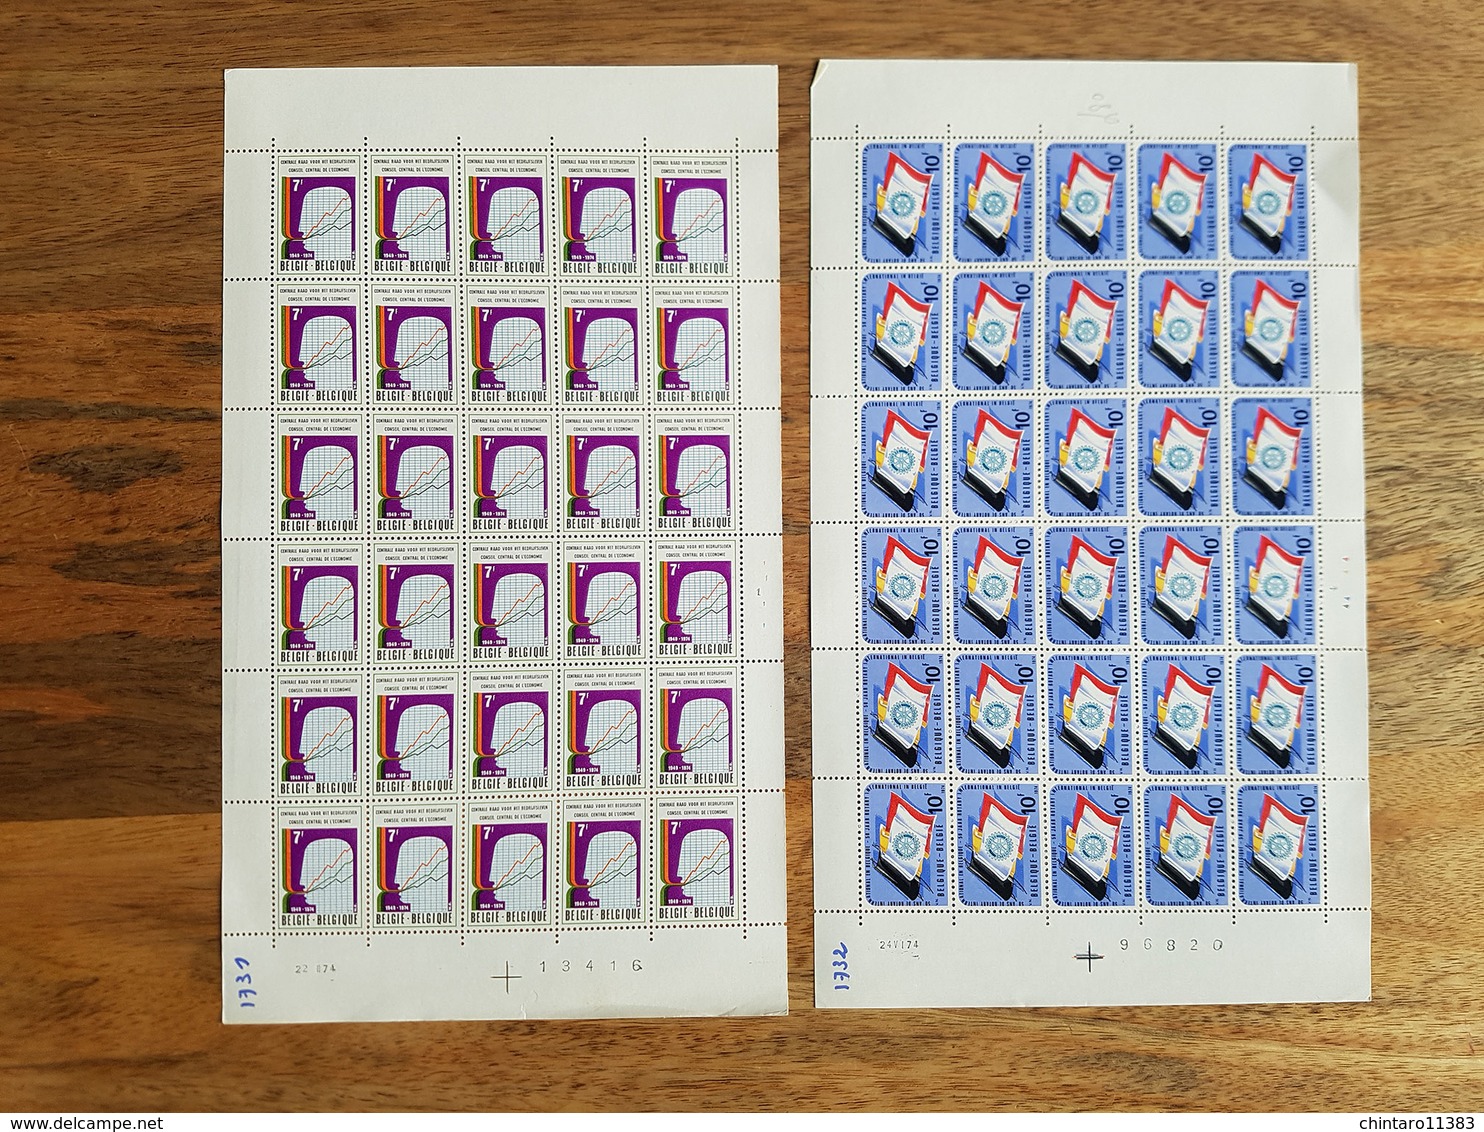 Lot feuilles complètes de timbres Belgique - Année 1974